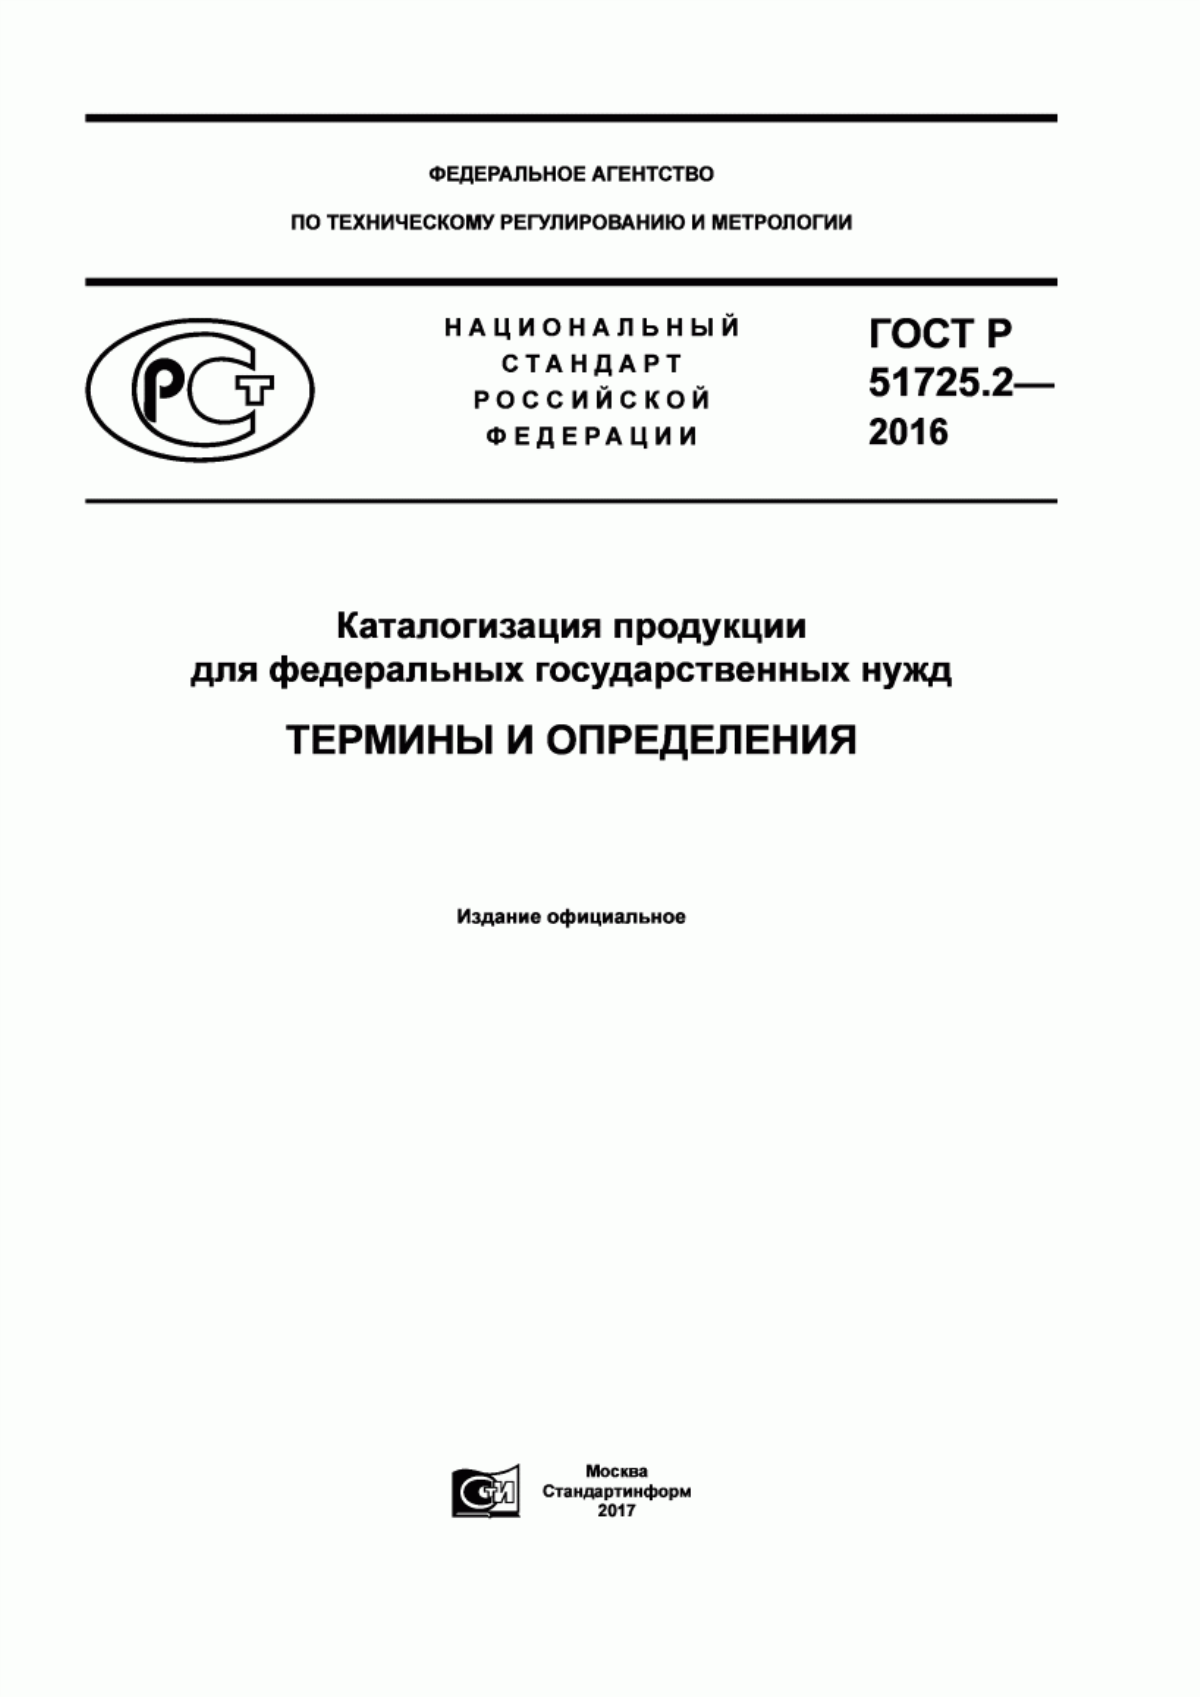 ГОСТ Р 51725.2-2016 Каталогизация продукции для федеральных государственных нужд. Термины и определения